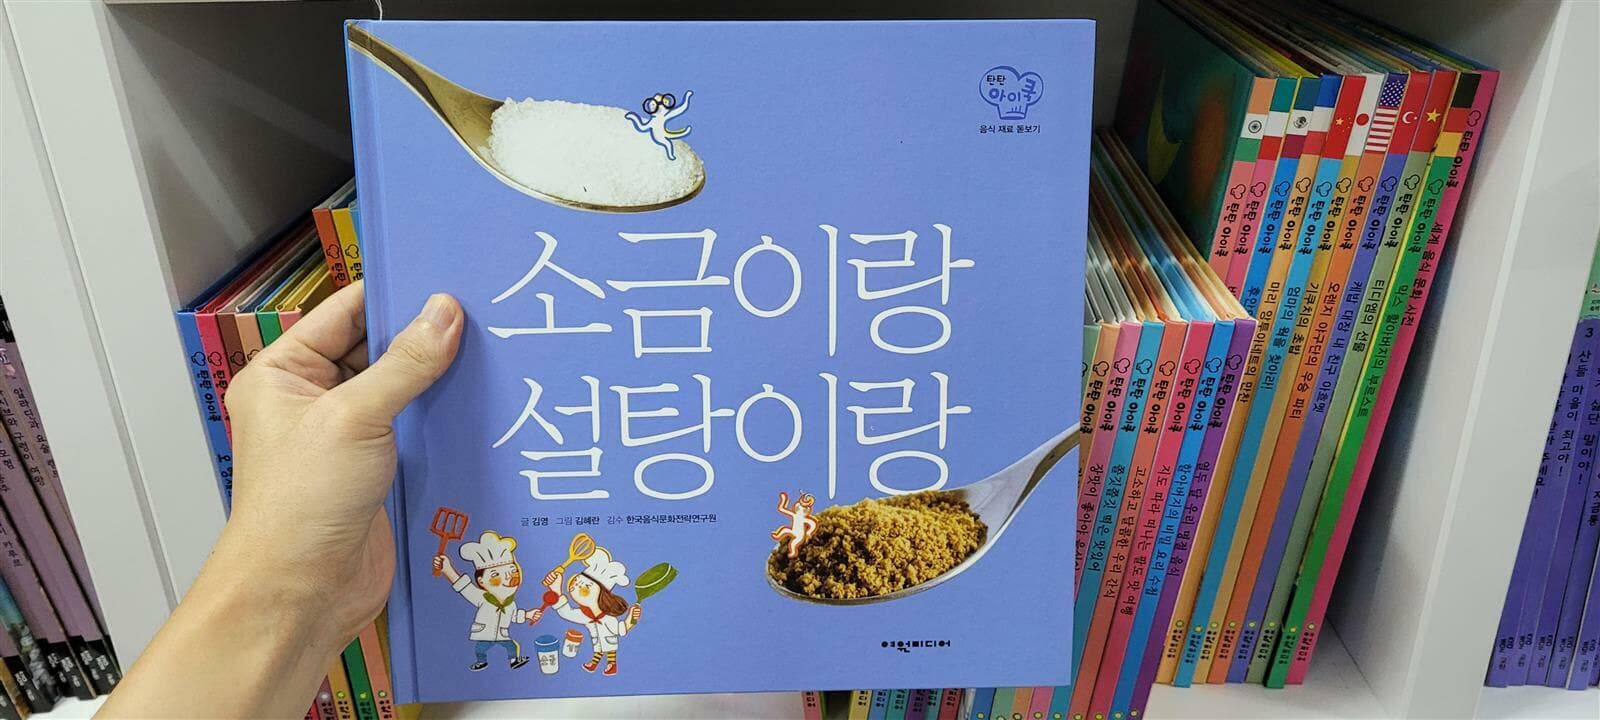 탄탄아이쿡 본책 57권+음식문화사전1+부록2권+가이드북1 (61종 세트)